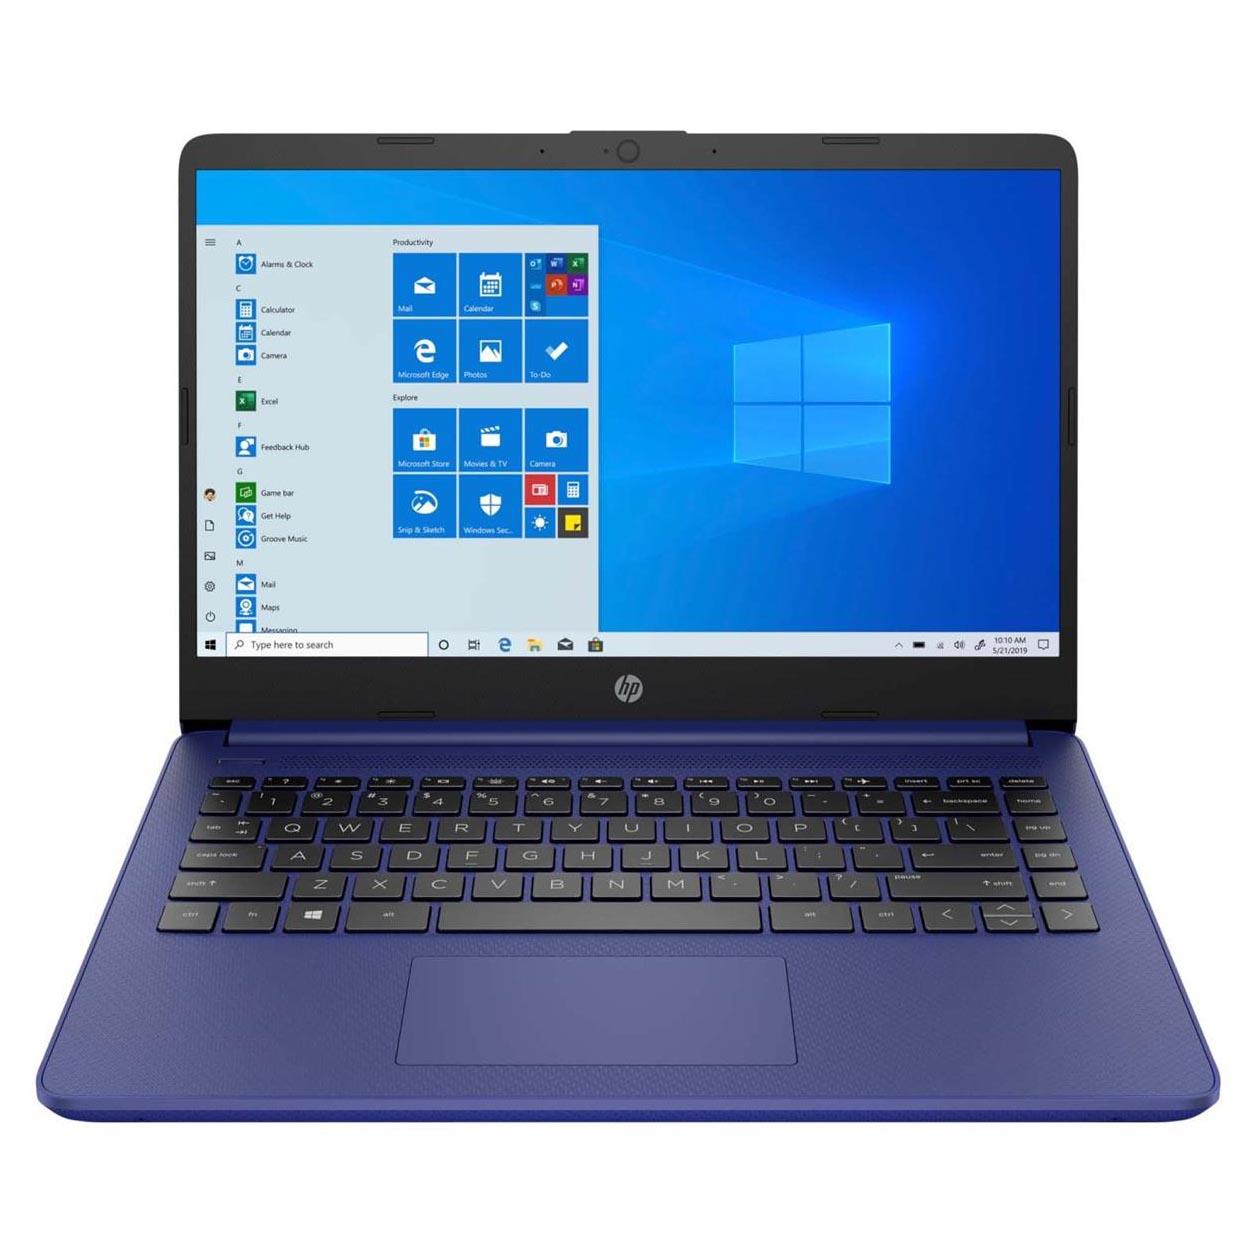 Ноутбук HP 14-dq0050nr, 14 HD Сенсорный, 4Гб/64Гб, Celeron N4020, сине-фиолетовый, английская клавиатура ноутбук hp 14 dq1037wm 14 hd 4гб 128гб серебряный английская клавиатура